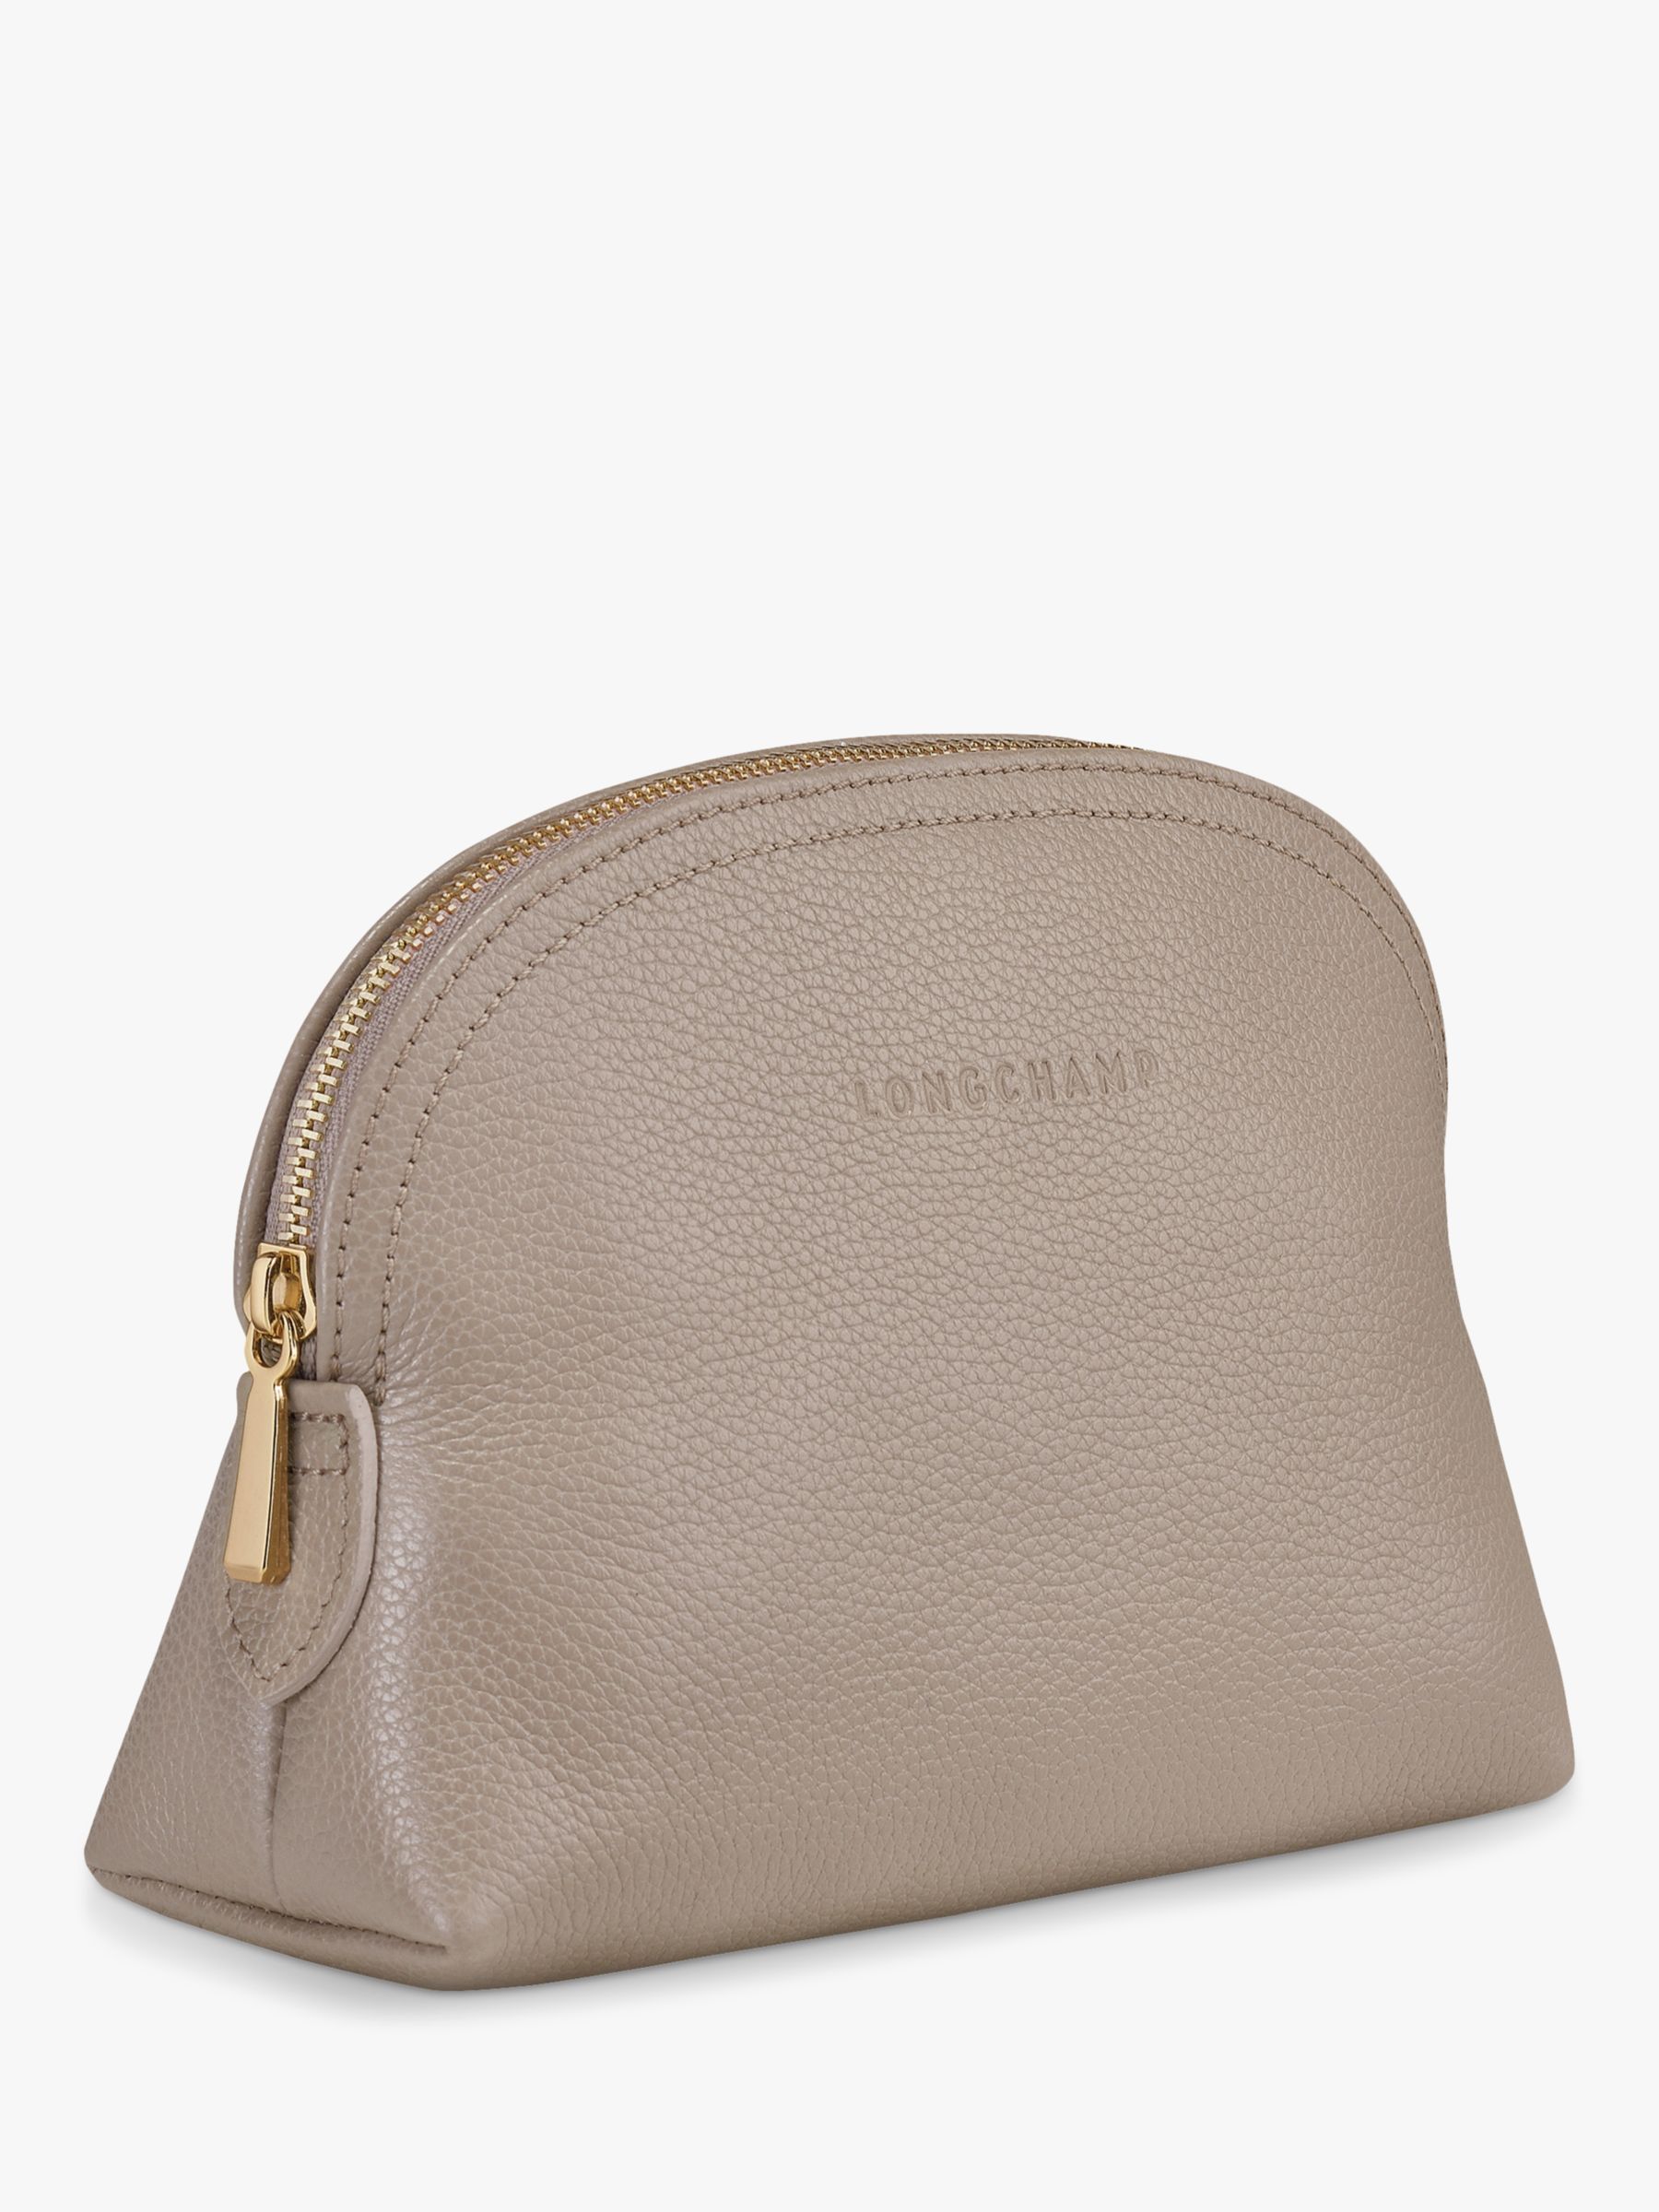 Buy Longchamp Le Foulonné Leather Pouch Online at johnlewis.com